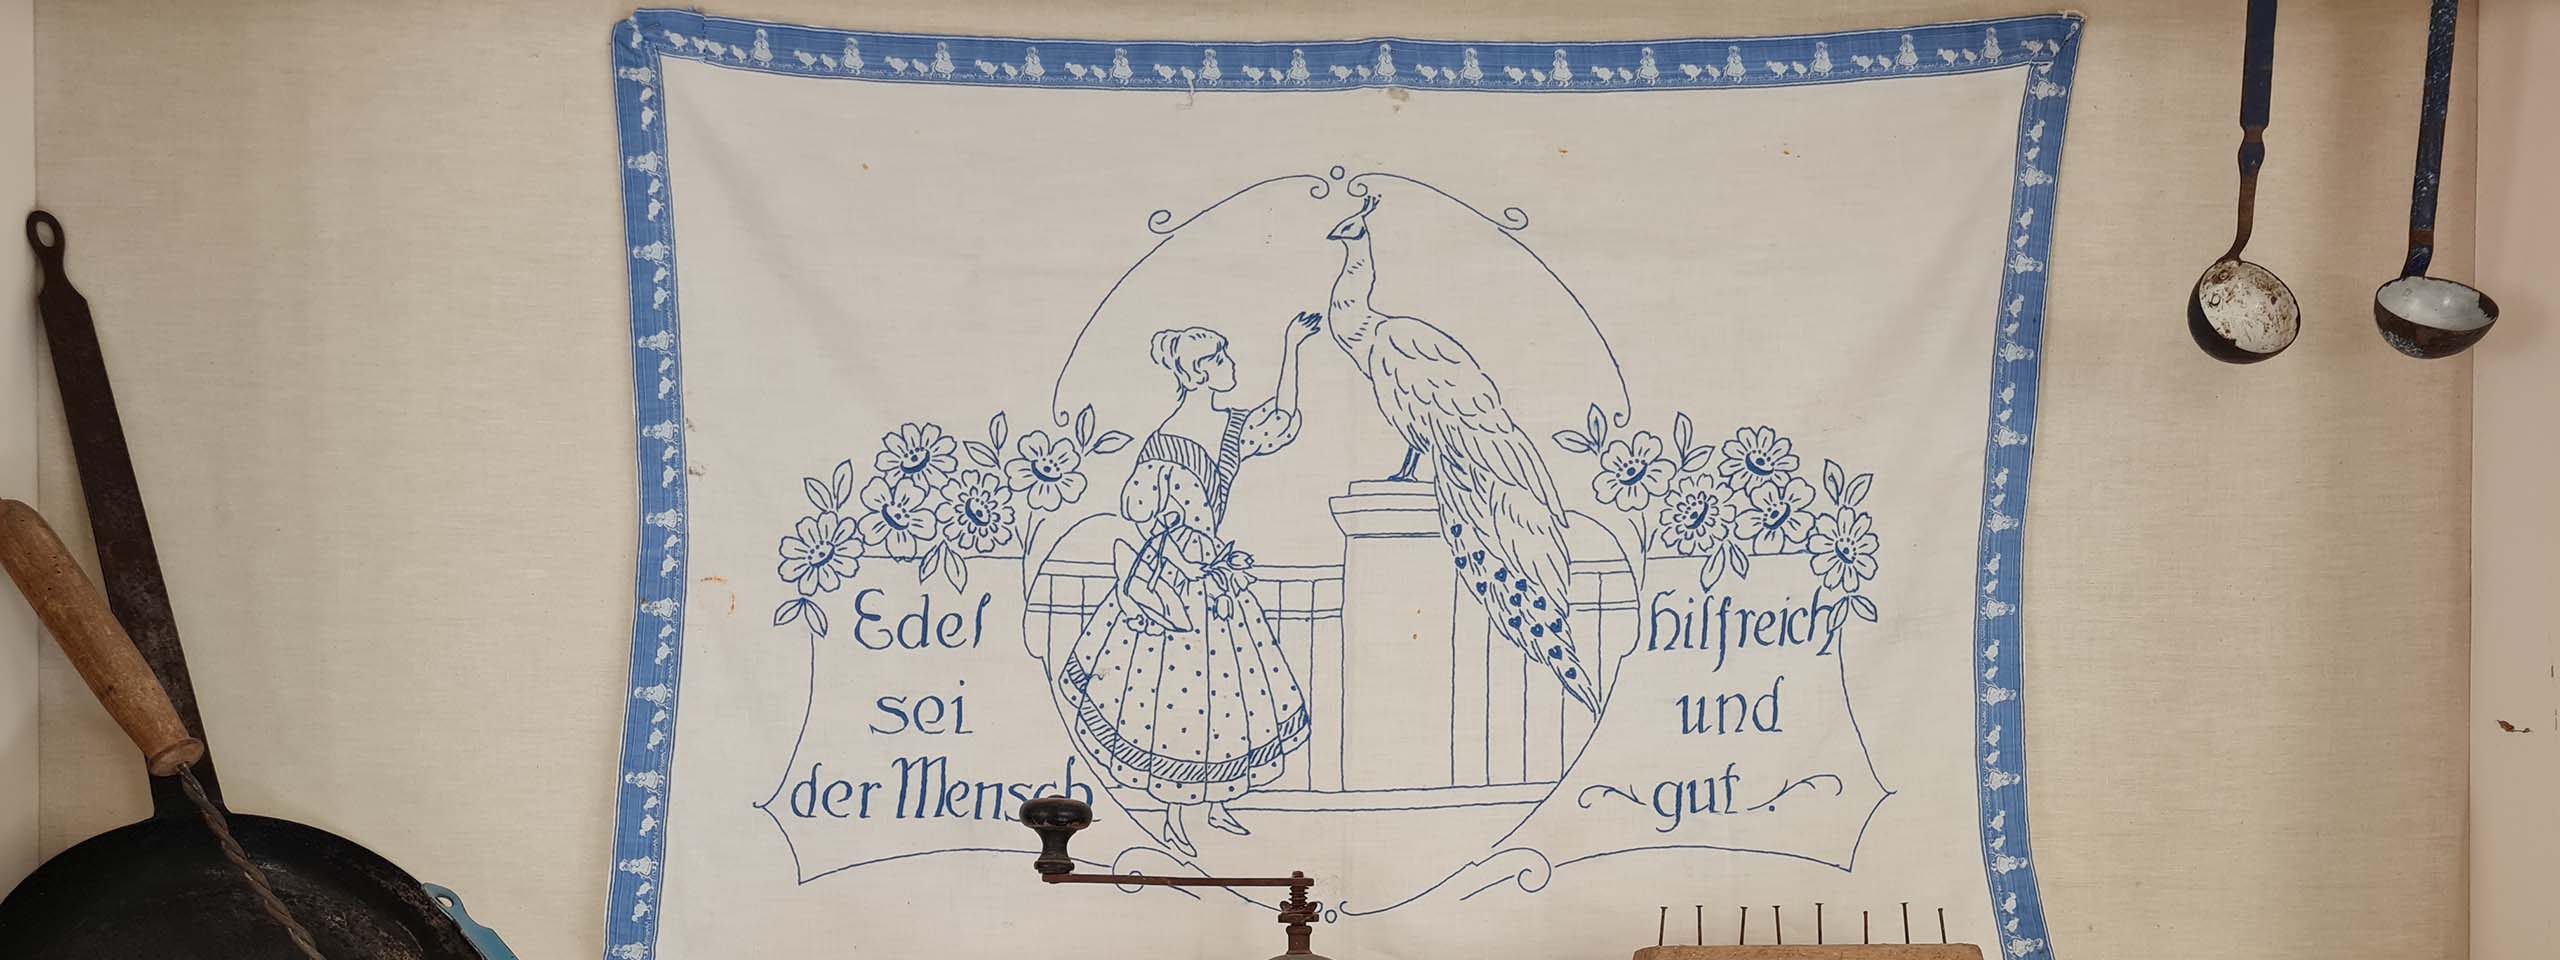 Hímzett terítő, mely egy nőt és egy pávát ábrázol mellette német felirattal